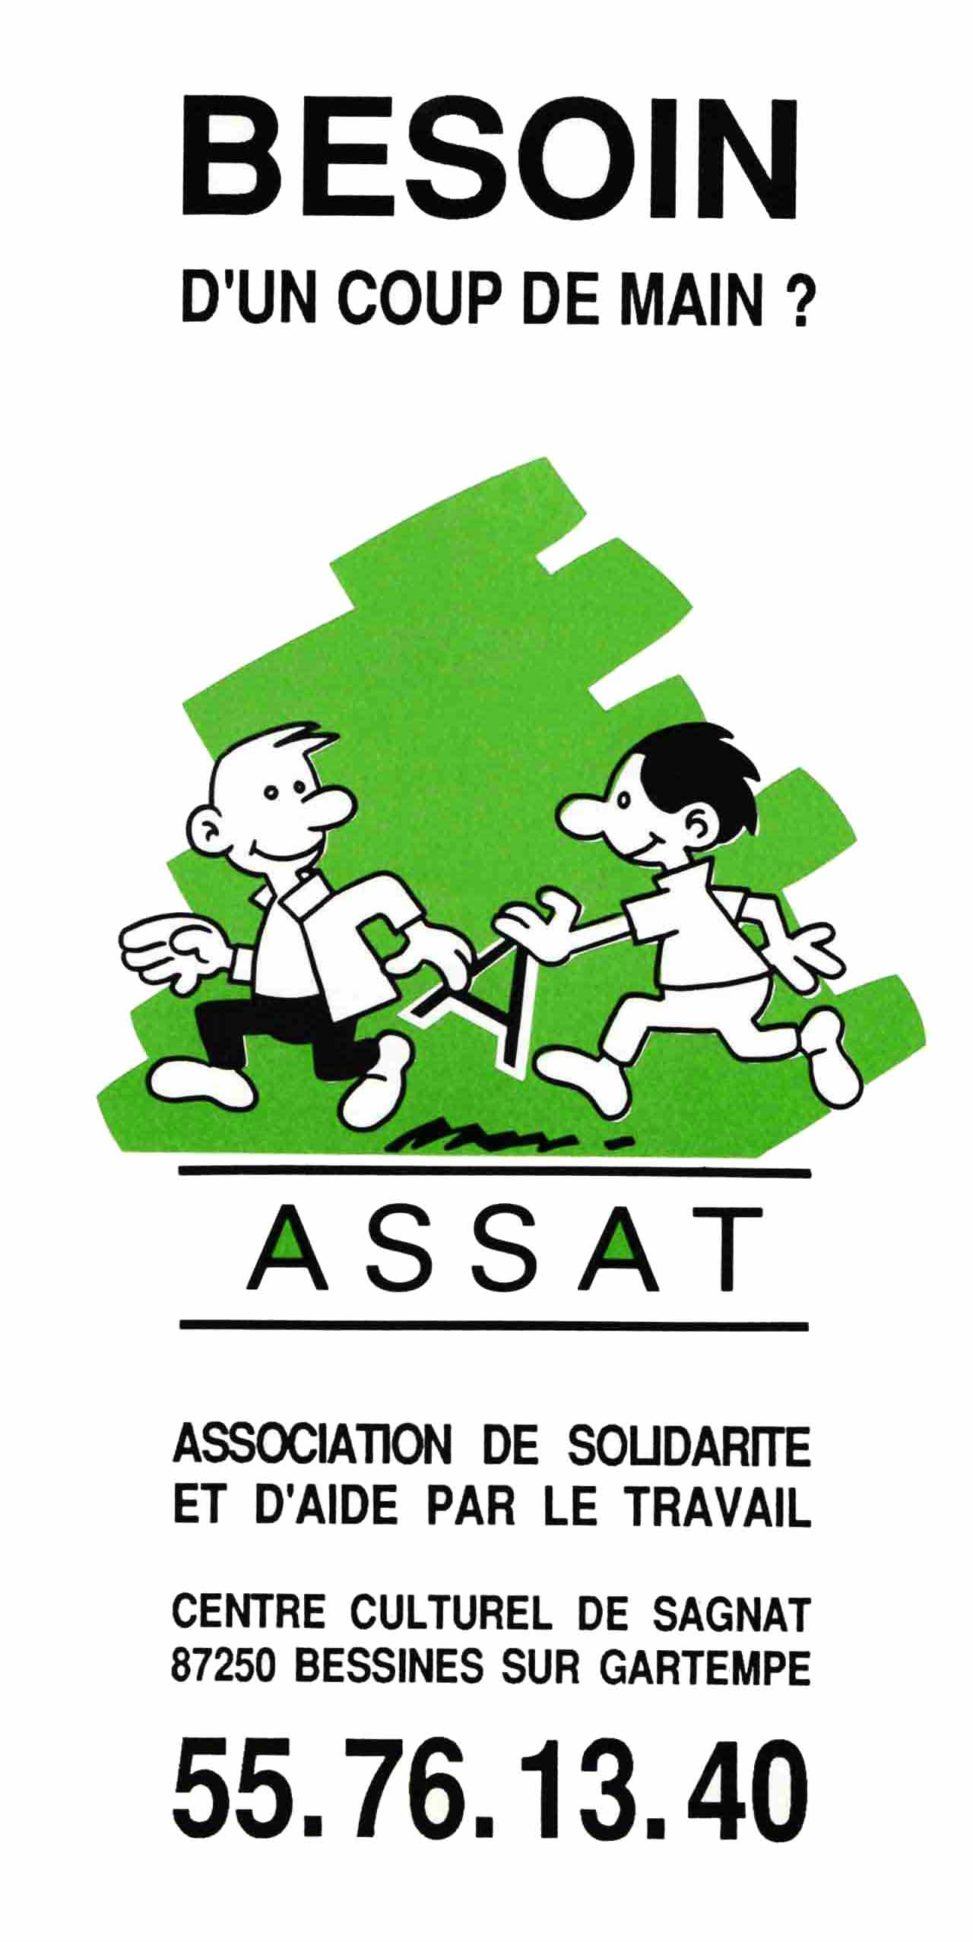 Dépliant et logo pour l'association ASSAT (Association de Solidarité et d'Aide par le Travail) de Bessines-sur-Gartempe